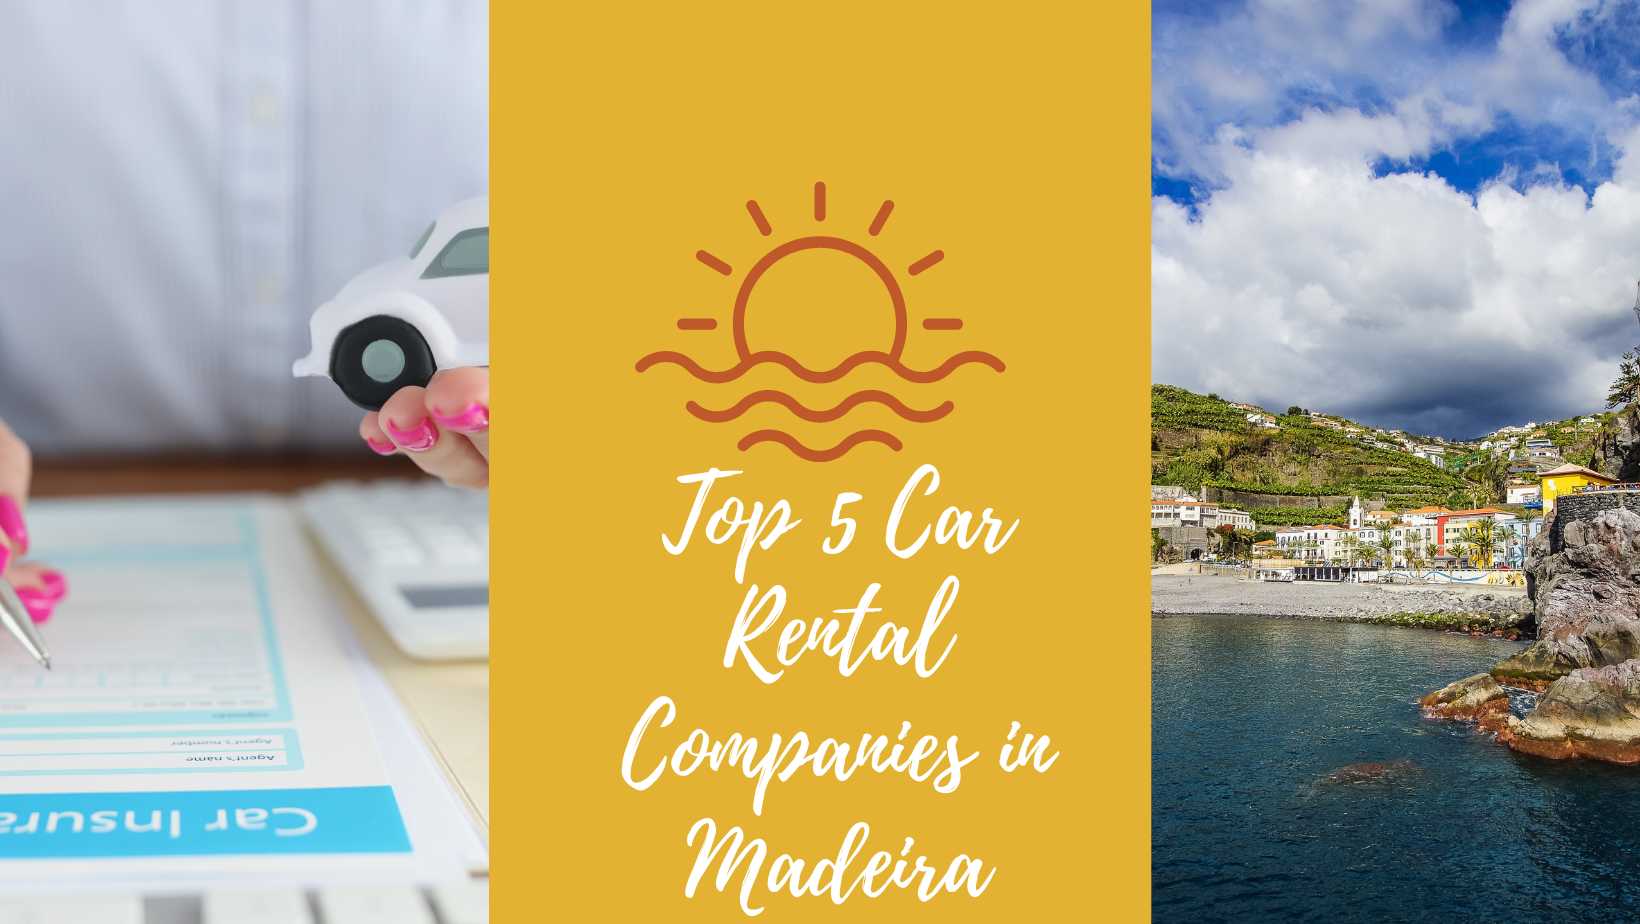 Madeira car rental companies